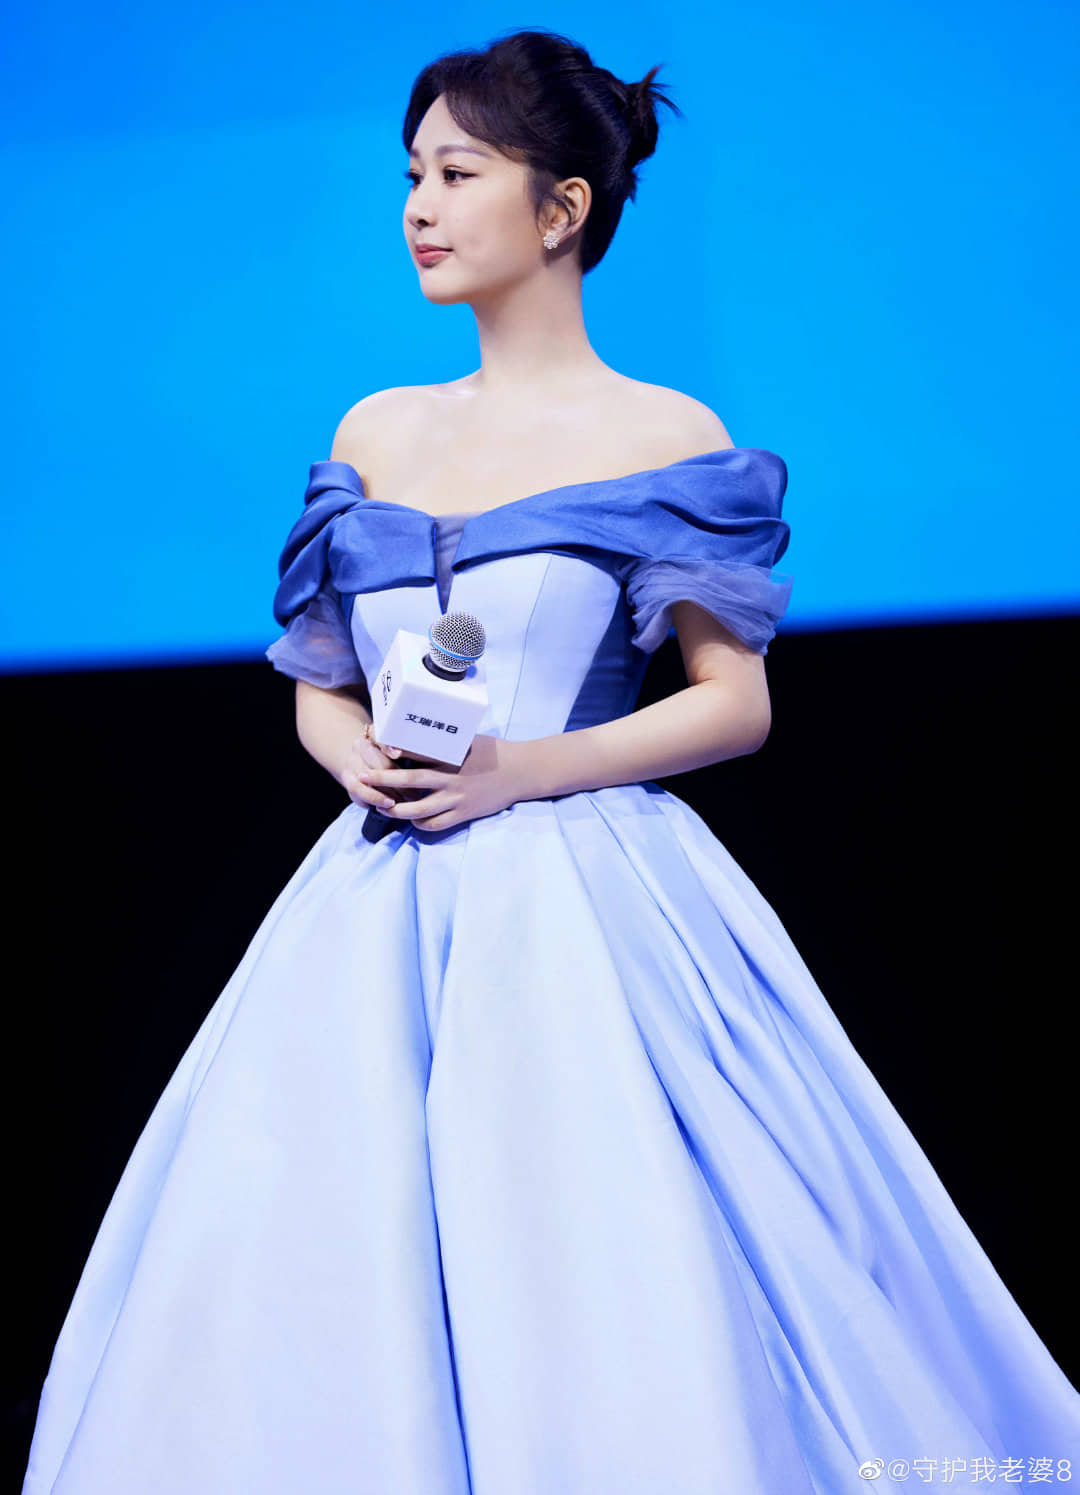 Dương Tử xuất hiện như 'công chúa Lọ Lem' trong một sự kiện, các netizen 'mê mẩn' vì mỹ nhân sở hữu điều này? - Ảnh 3